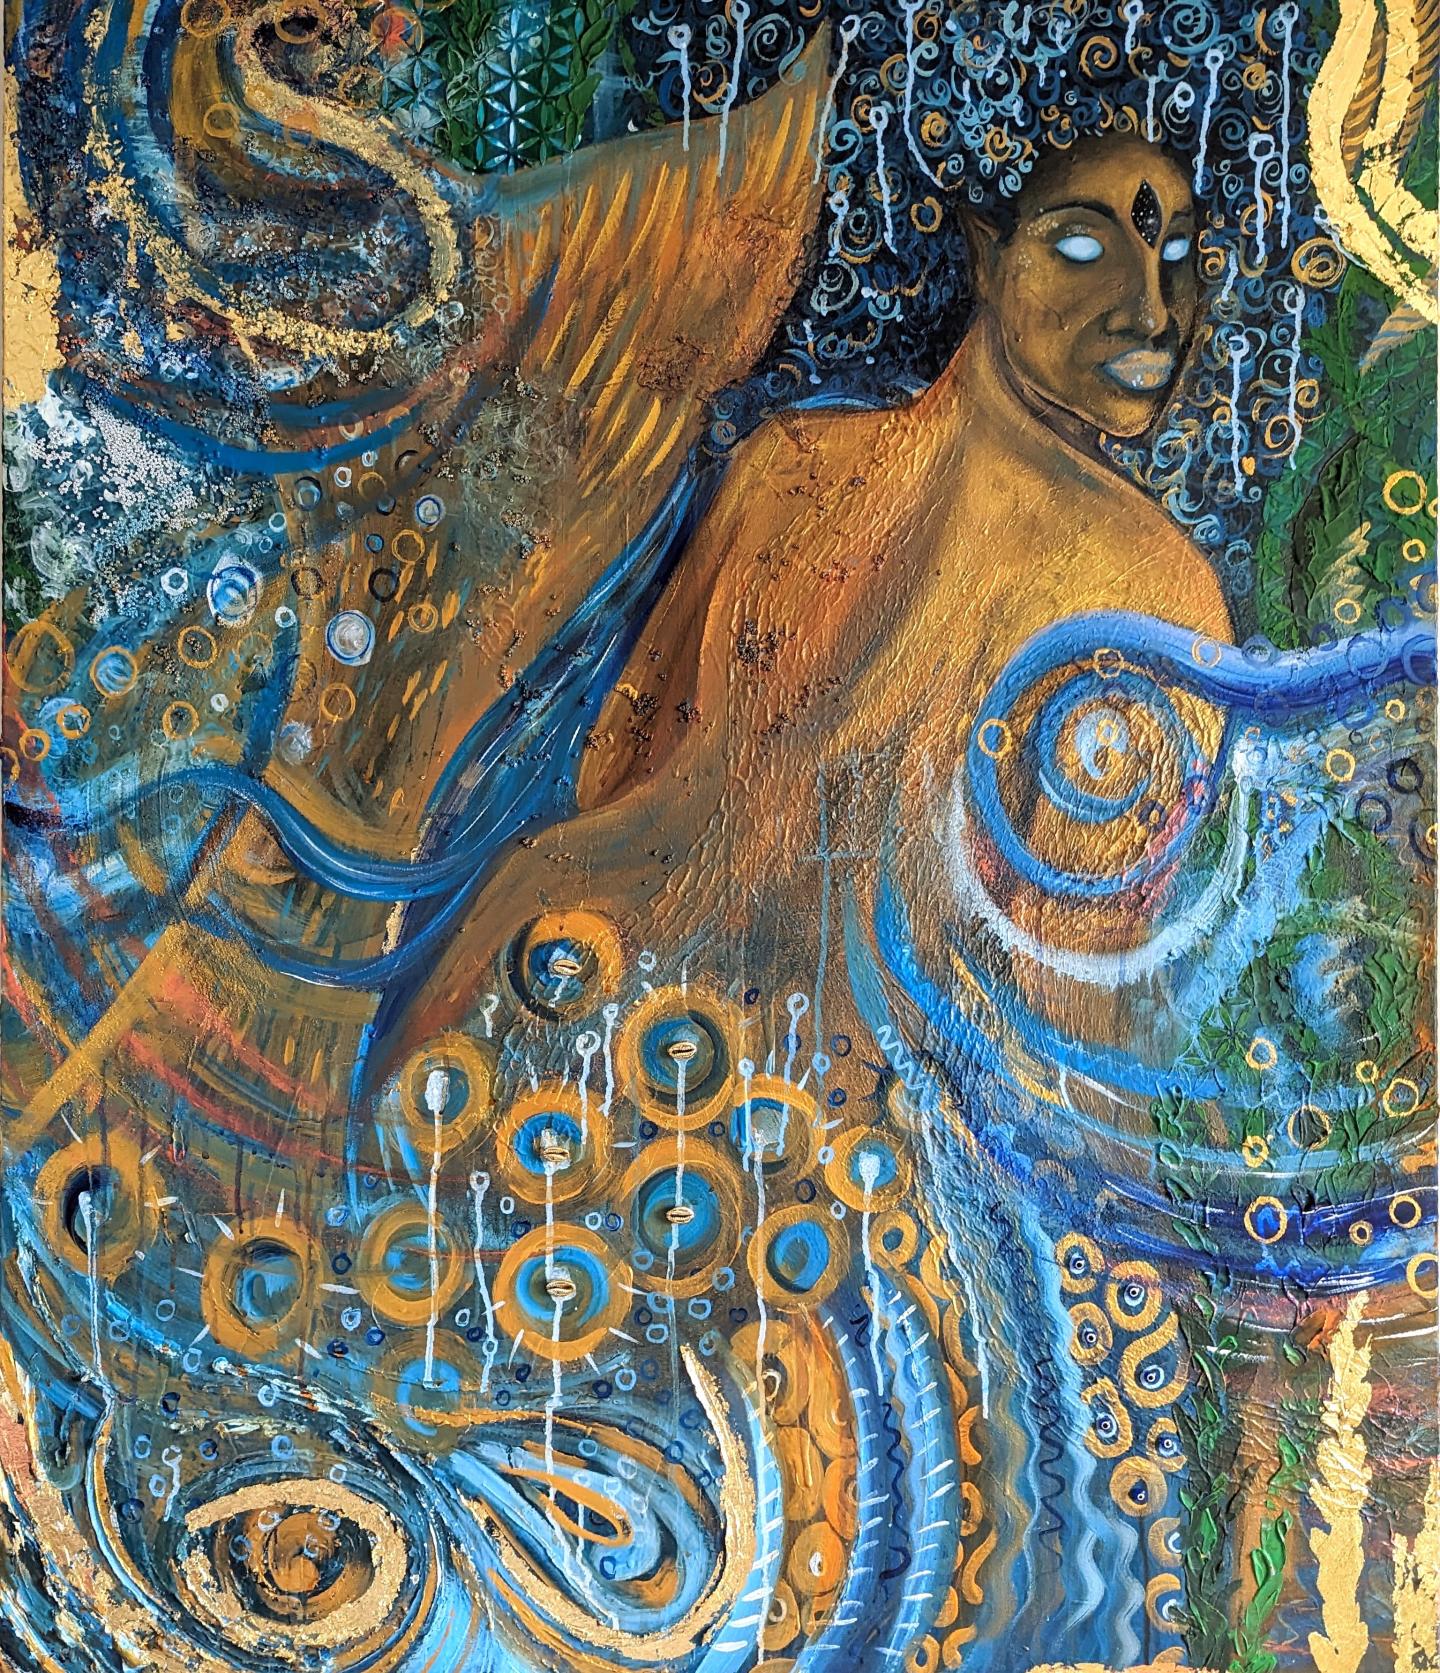 Painting of a black mermaid